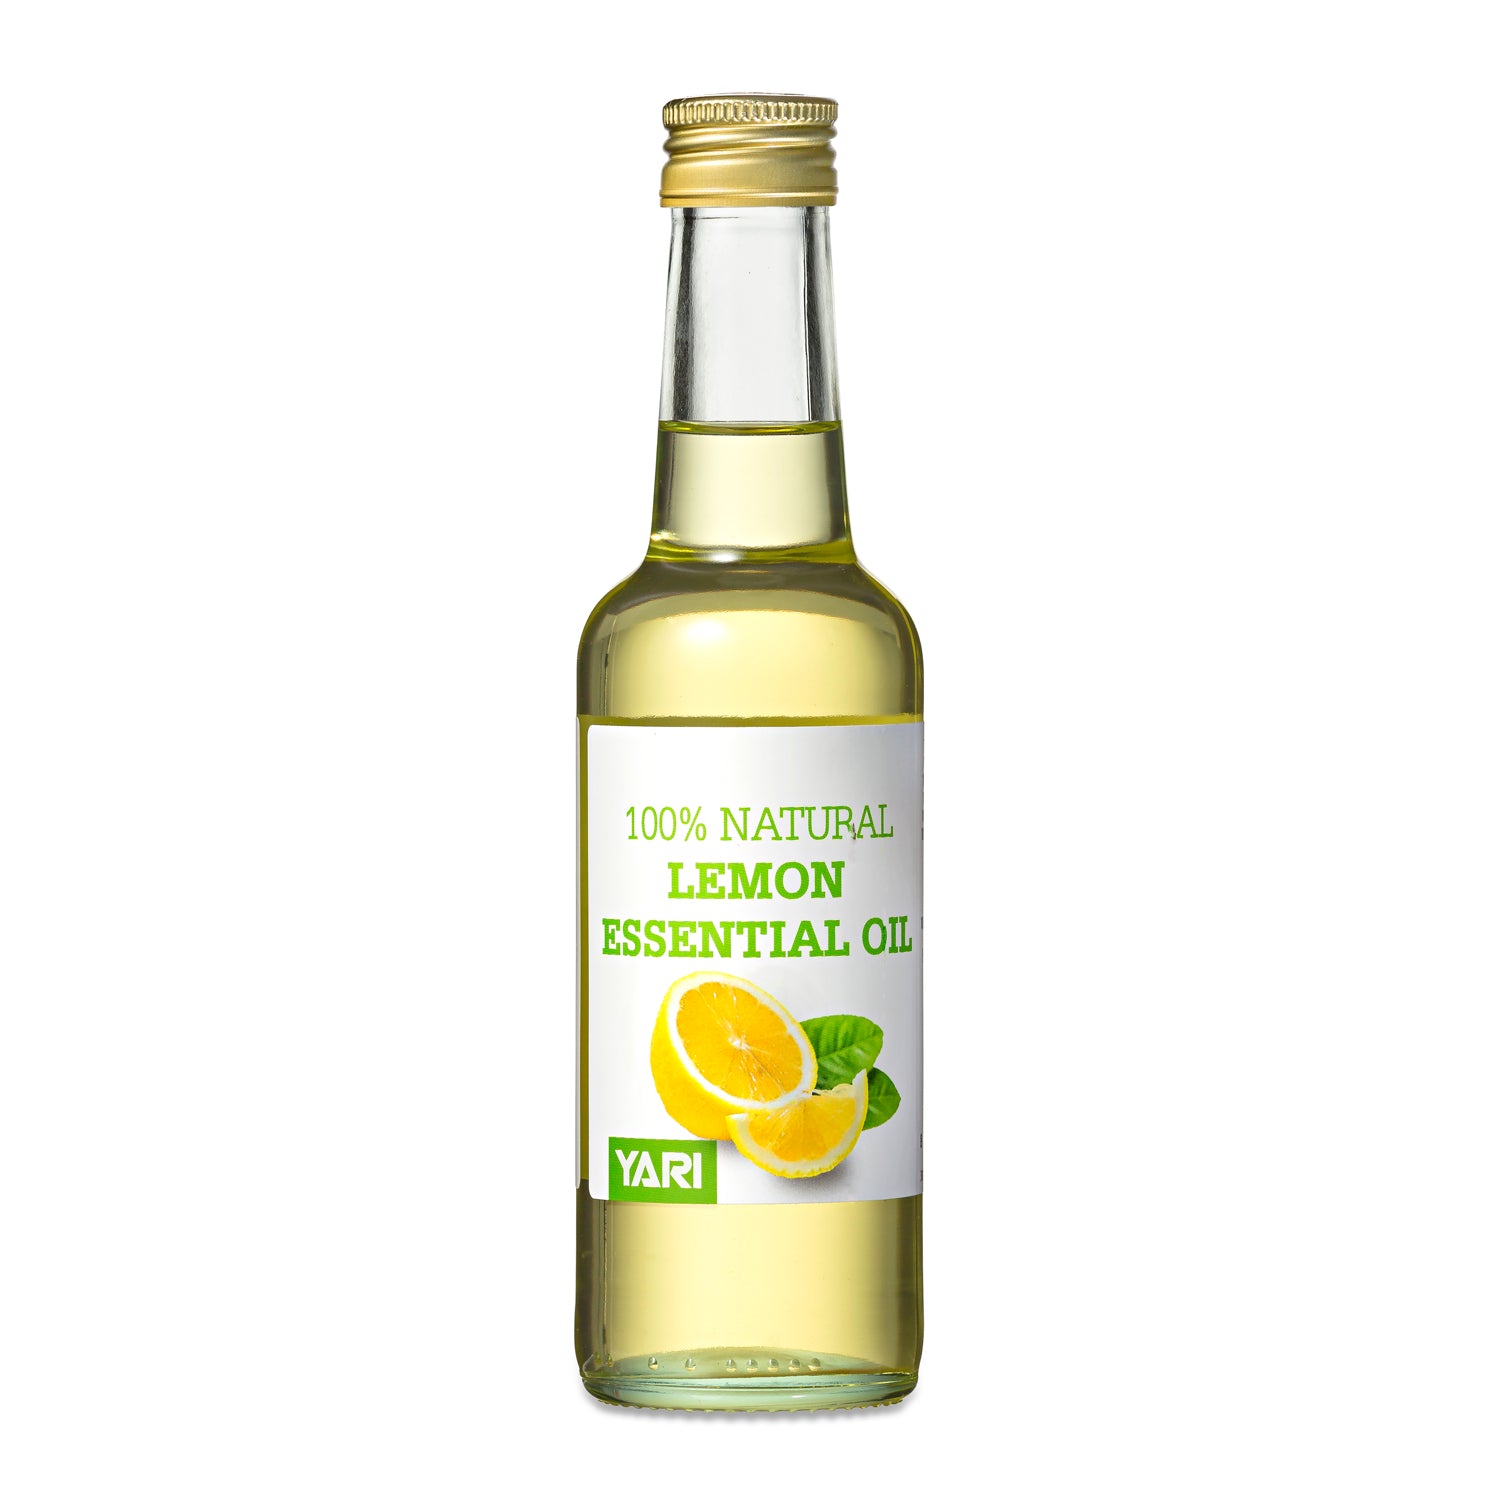 Yari - 100% Natural Lemon Essential Oil 250ml